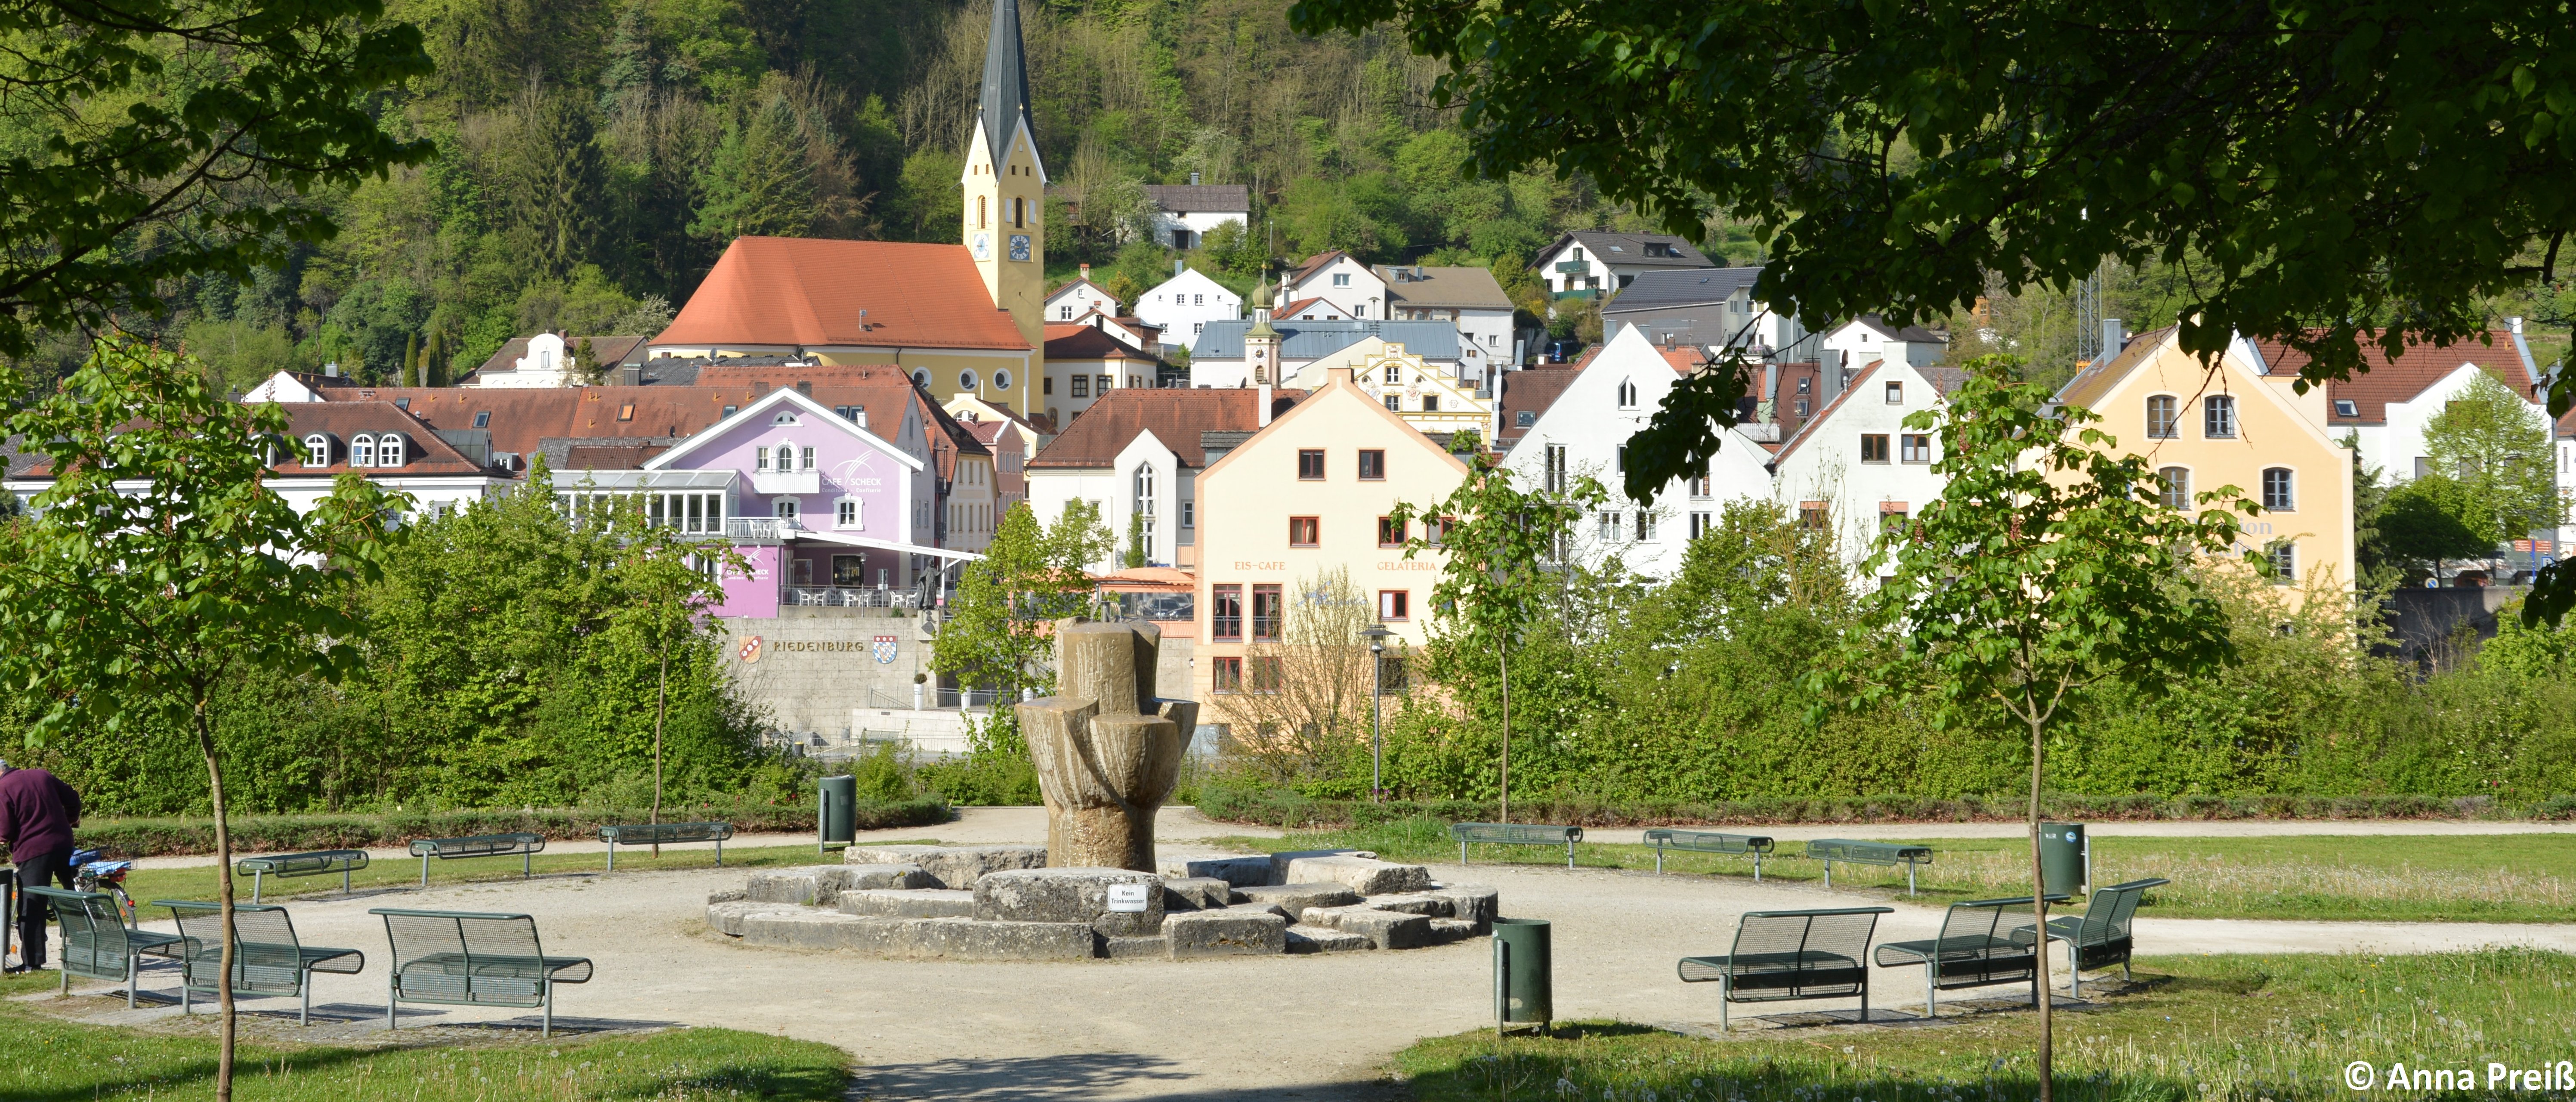 Auf diesen Bild sieht man den Sankt Anna Park mit der Rosenburg im Hintergrund